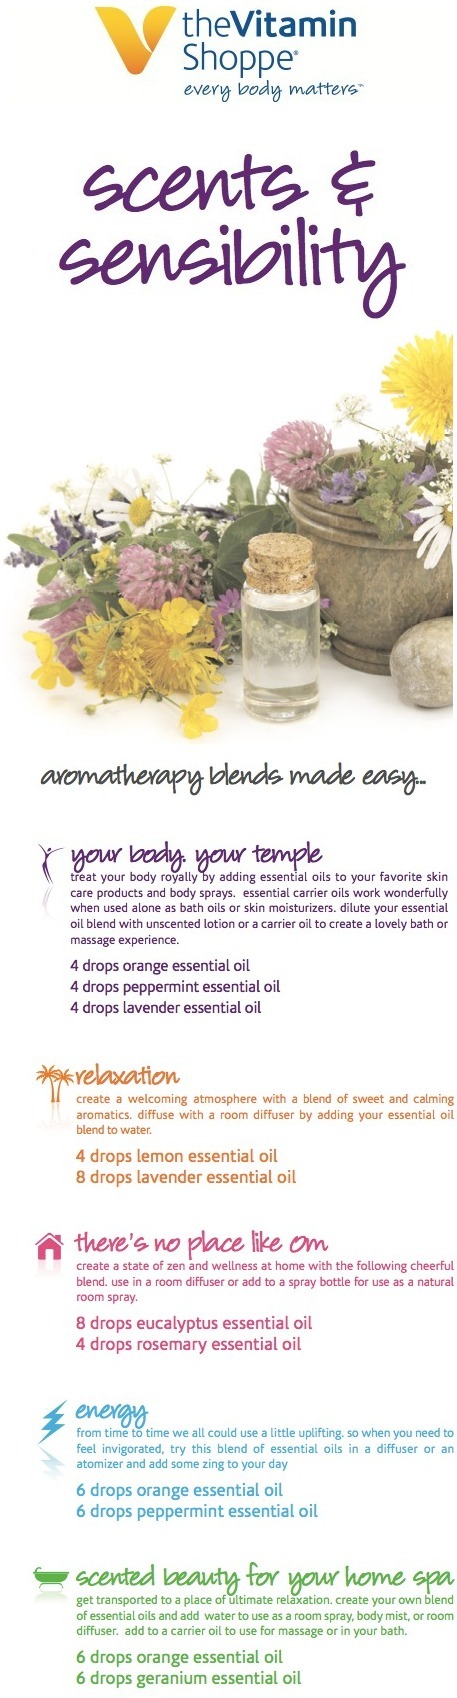 Aromatherapy blends